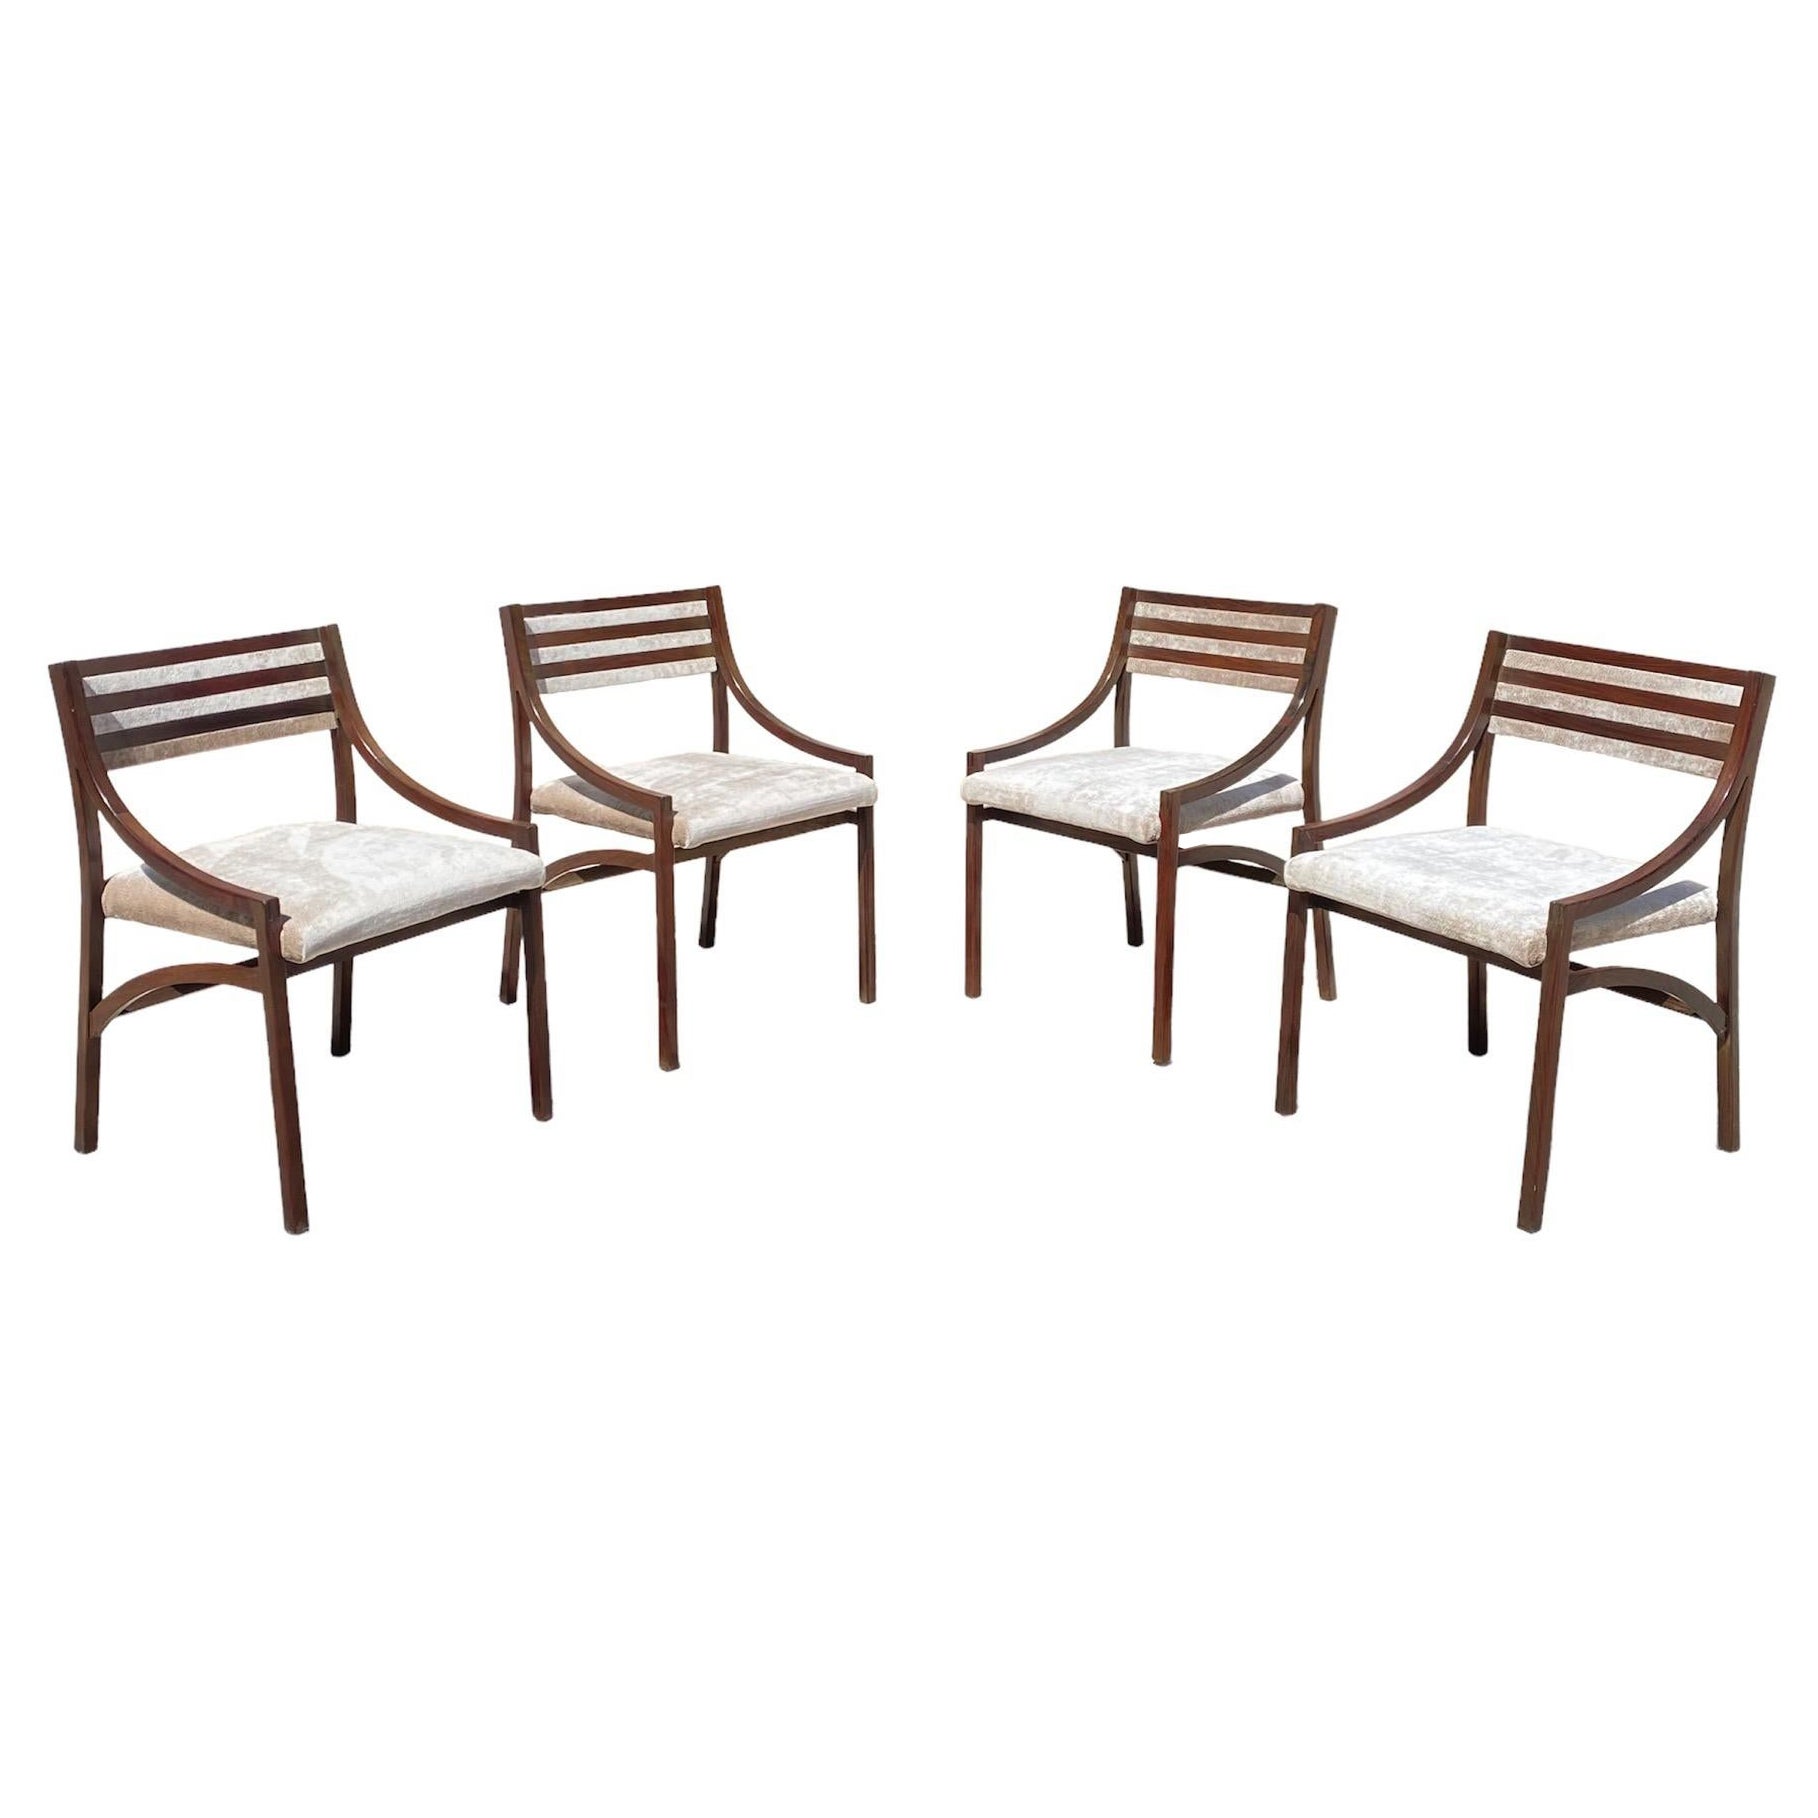 Ensemble de 4 chaises "110" conçu par Ico Parisi pour Cassina